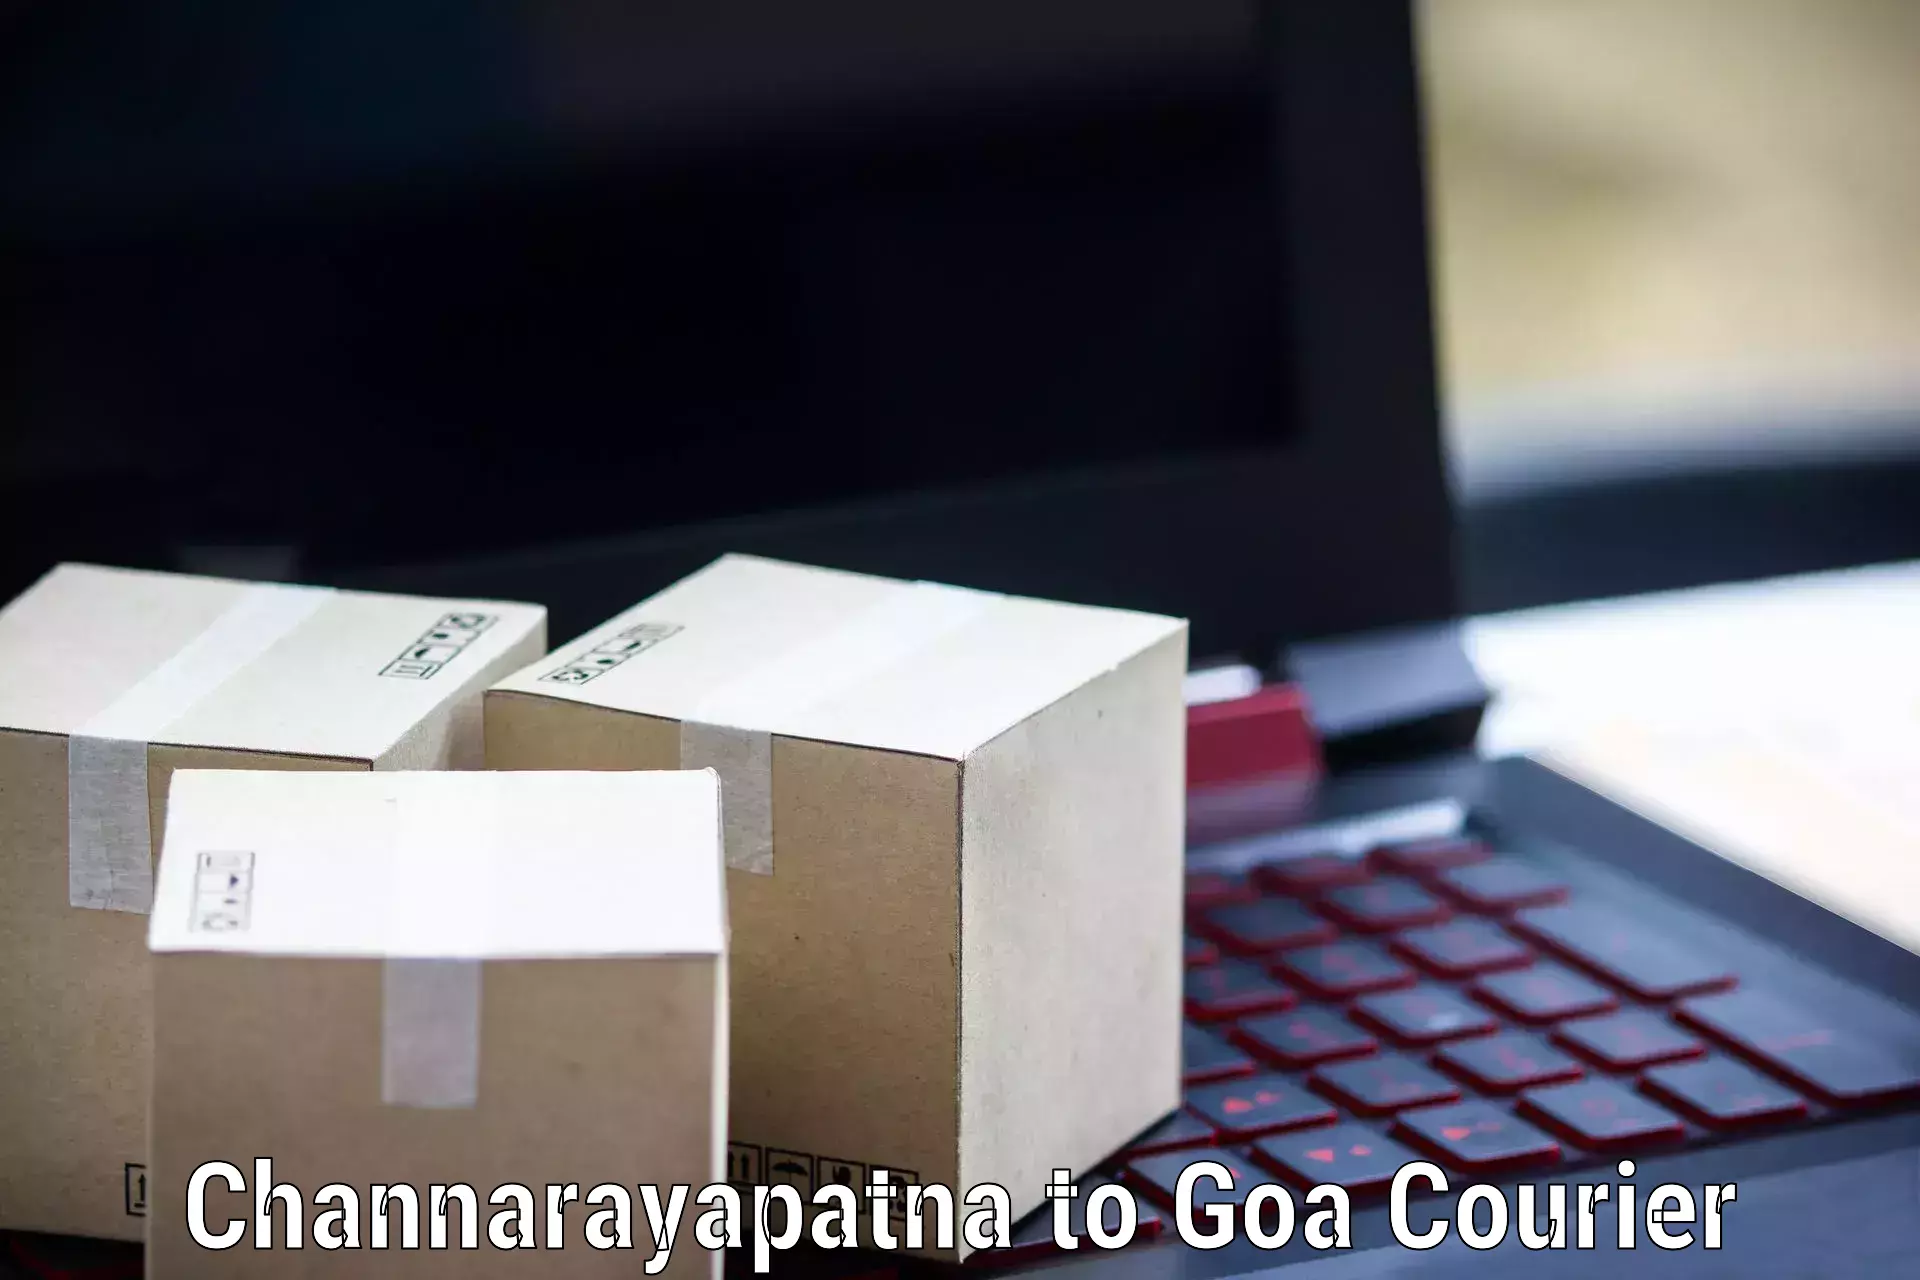 Express courier capabilities in Channarayapatna to Bicholim